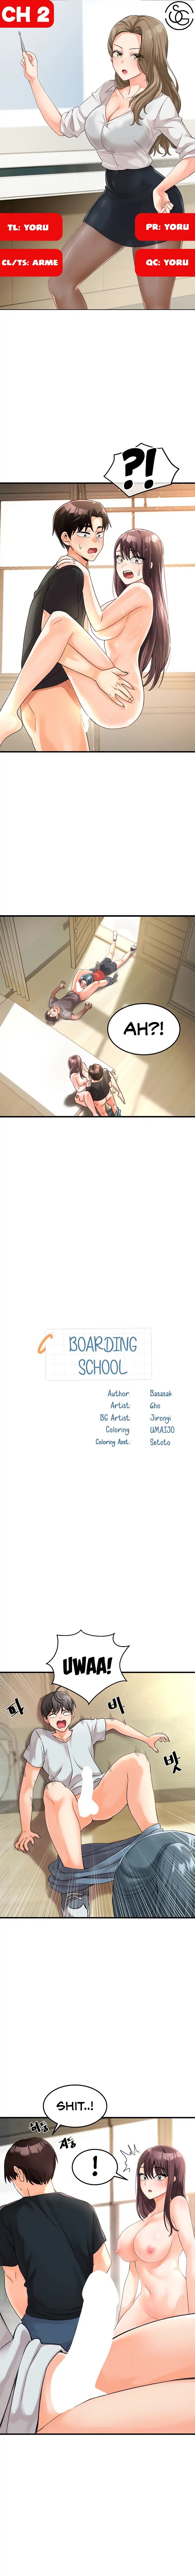 boarding-school-chap-2-0